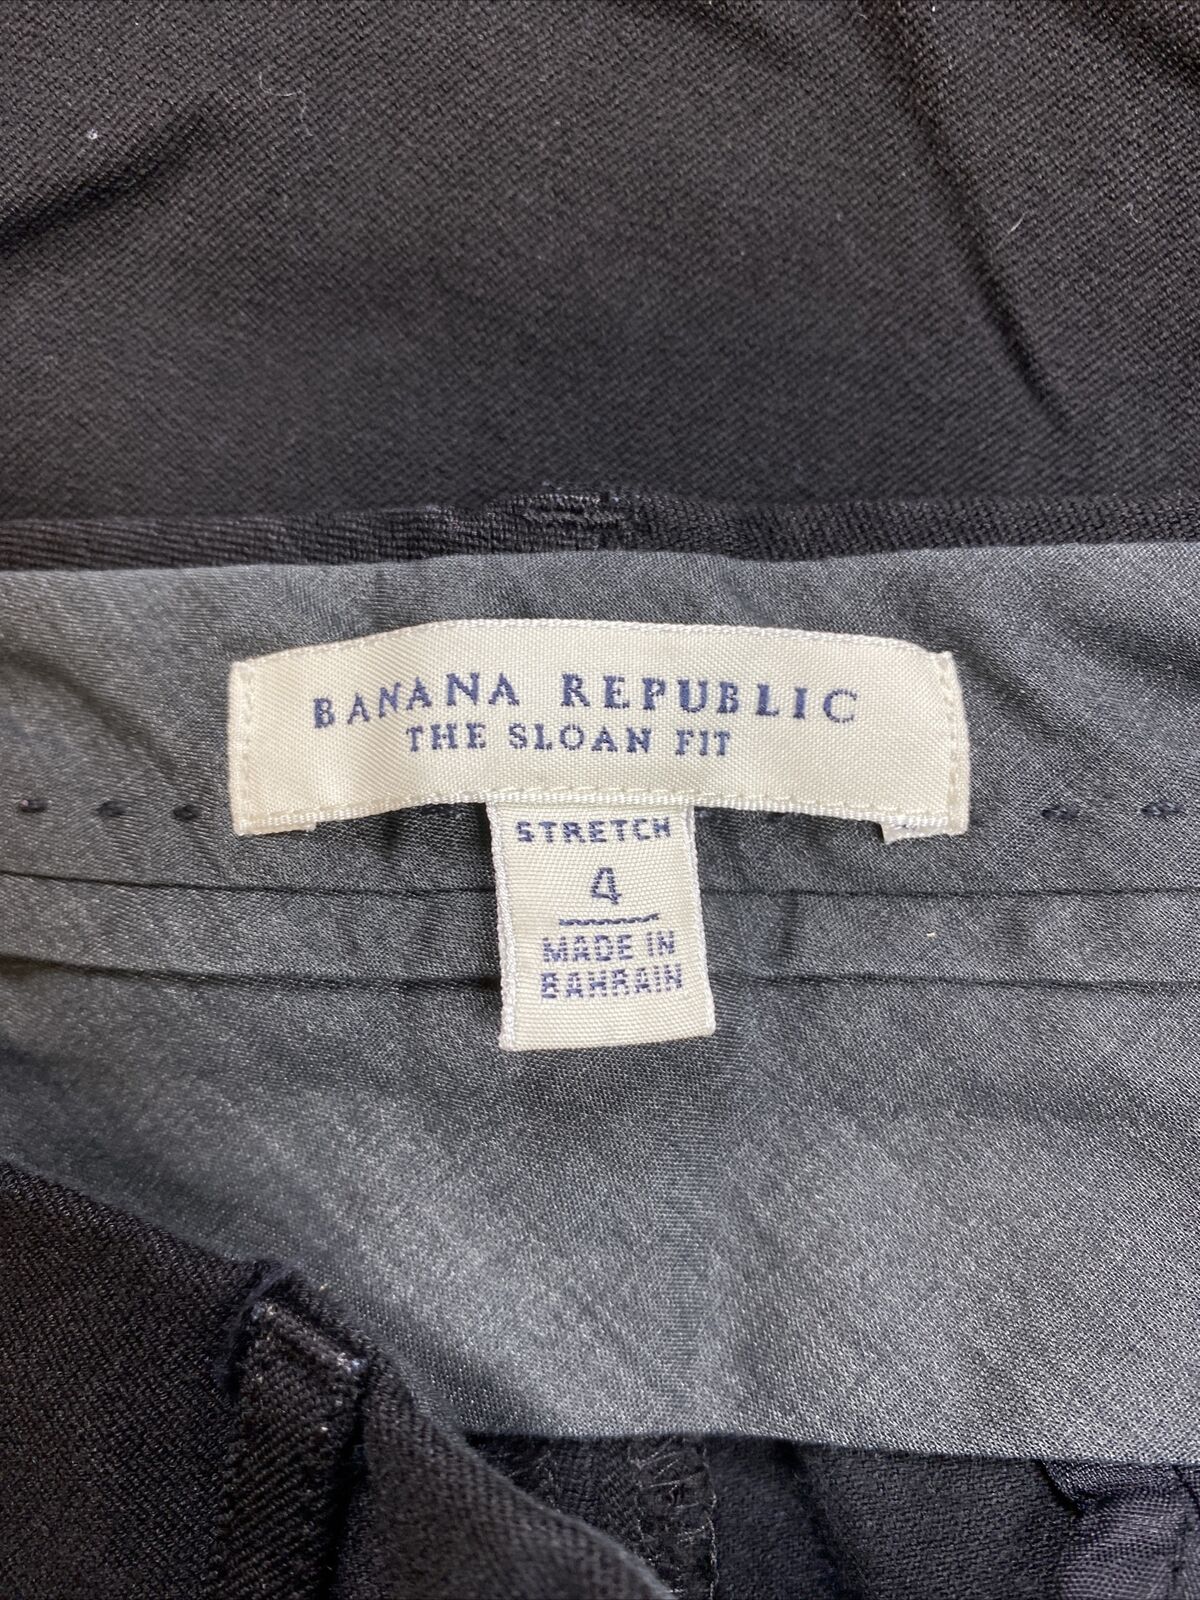 Banana Republic Women's Black Sloan Fit Stretch Pants - 4